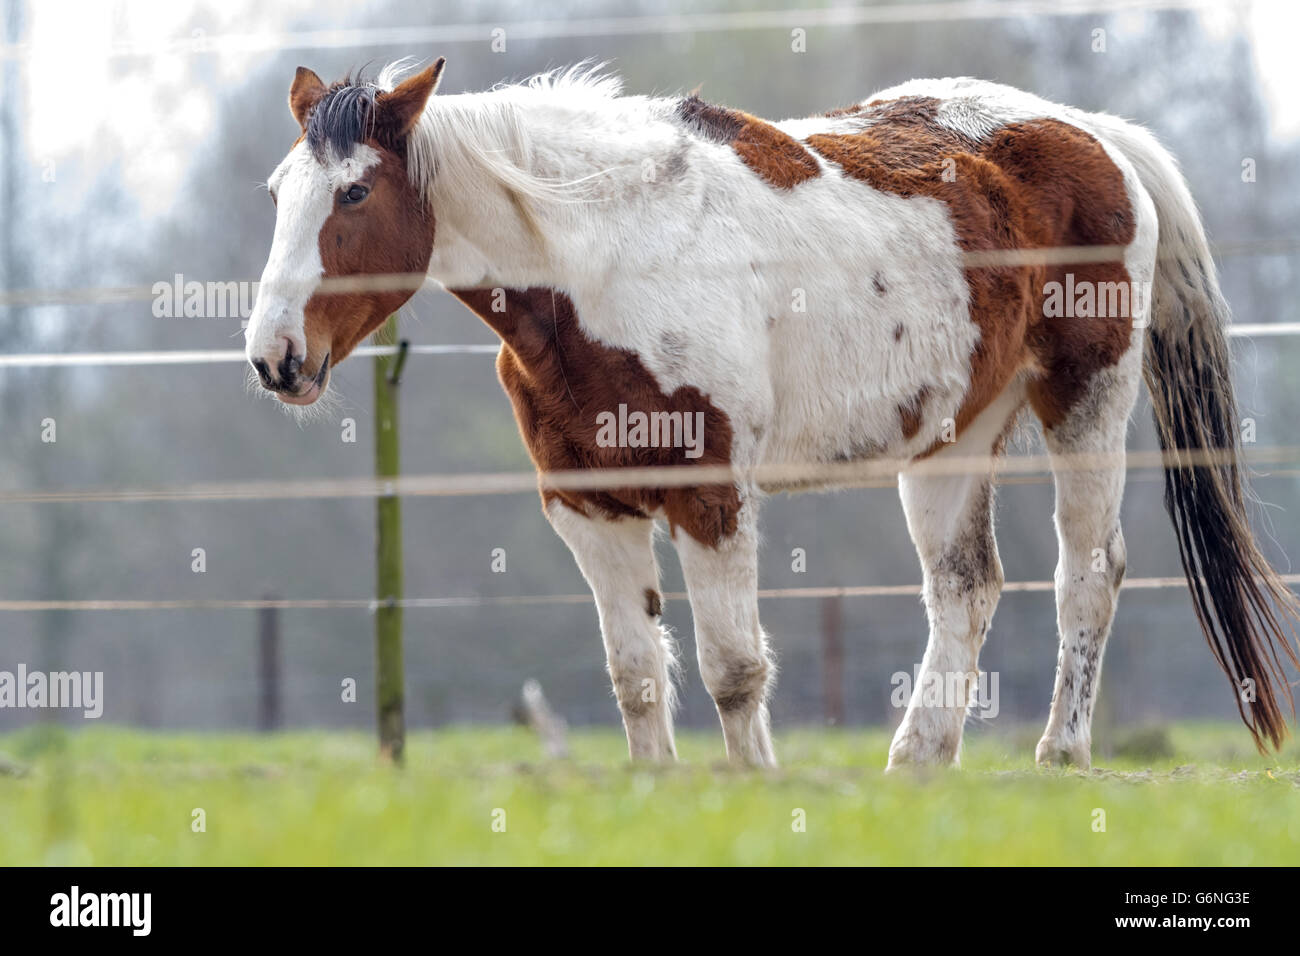 Un cheval tacheté de blanc et marron dans la prairie Banque D'Images